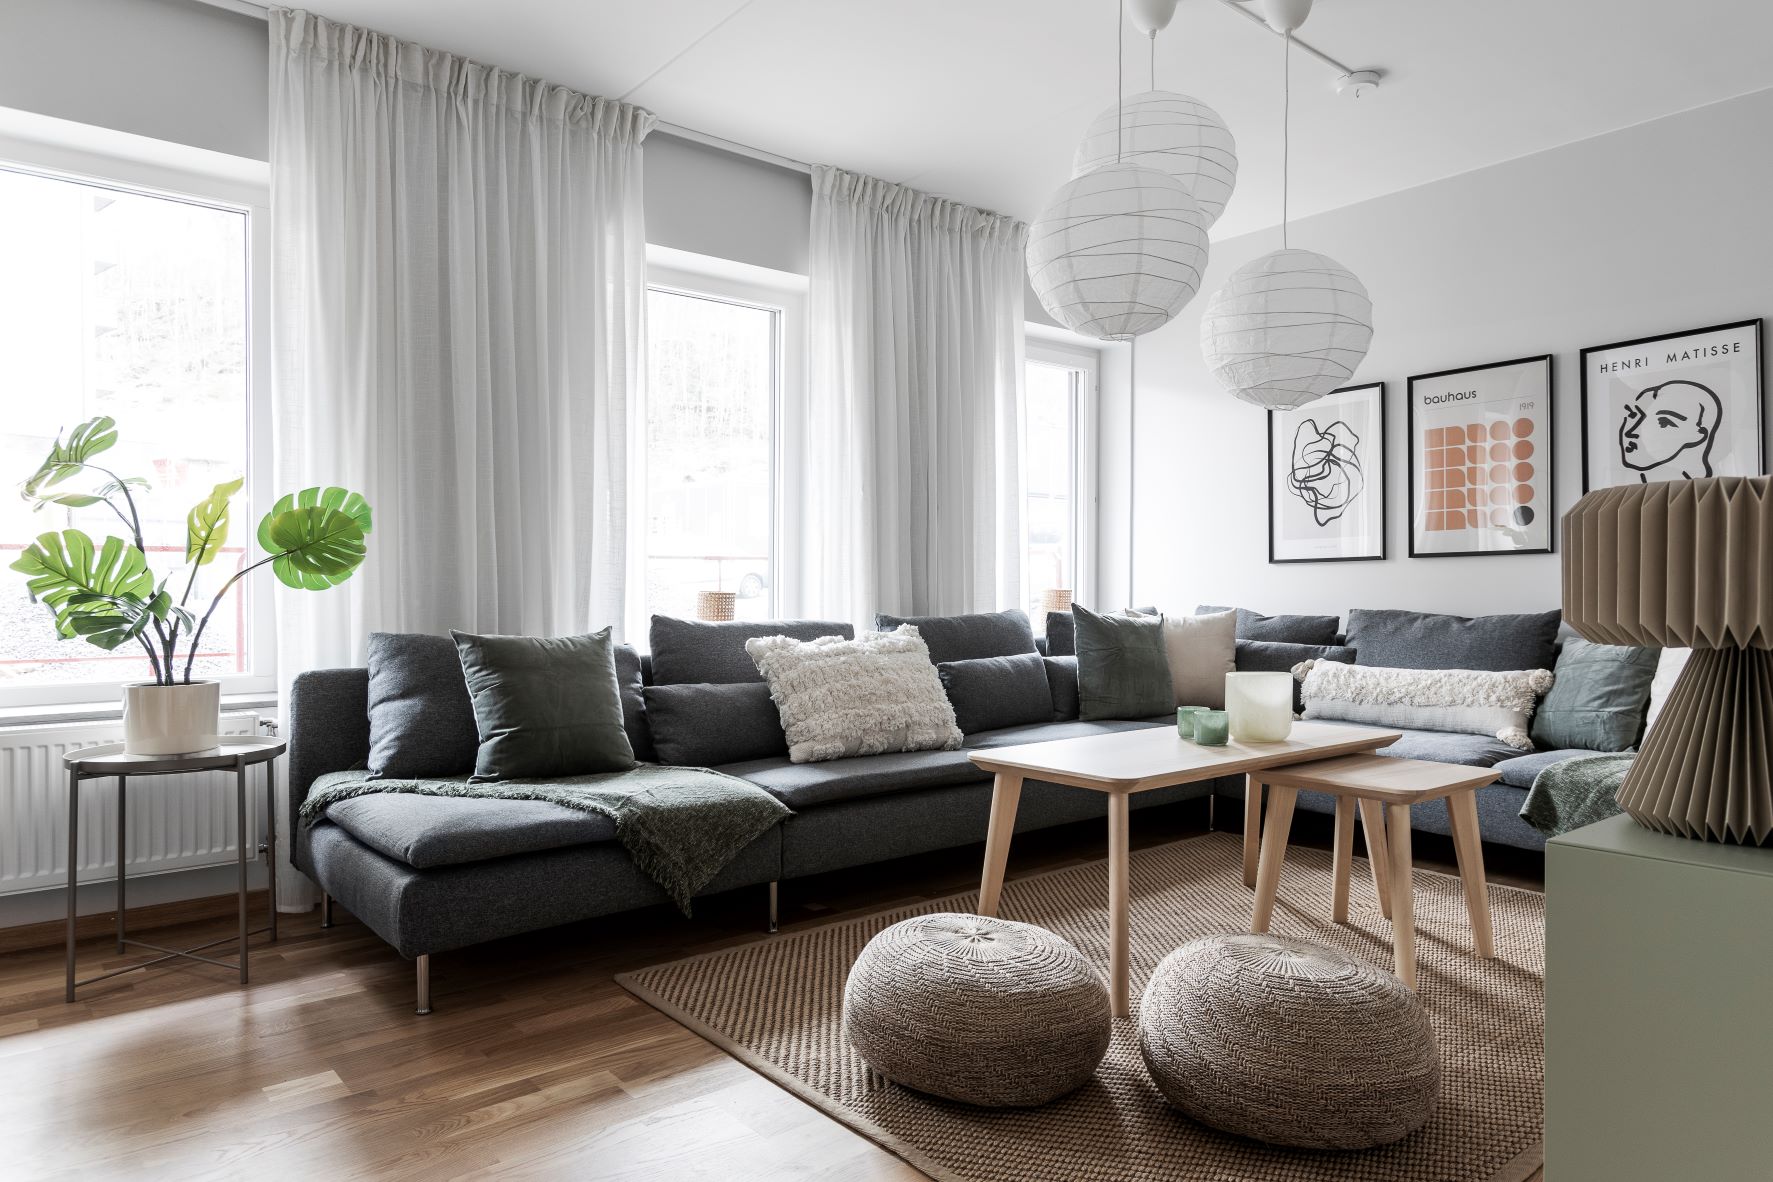 Colive Kallebäck shared livingroom